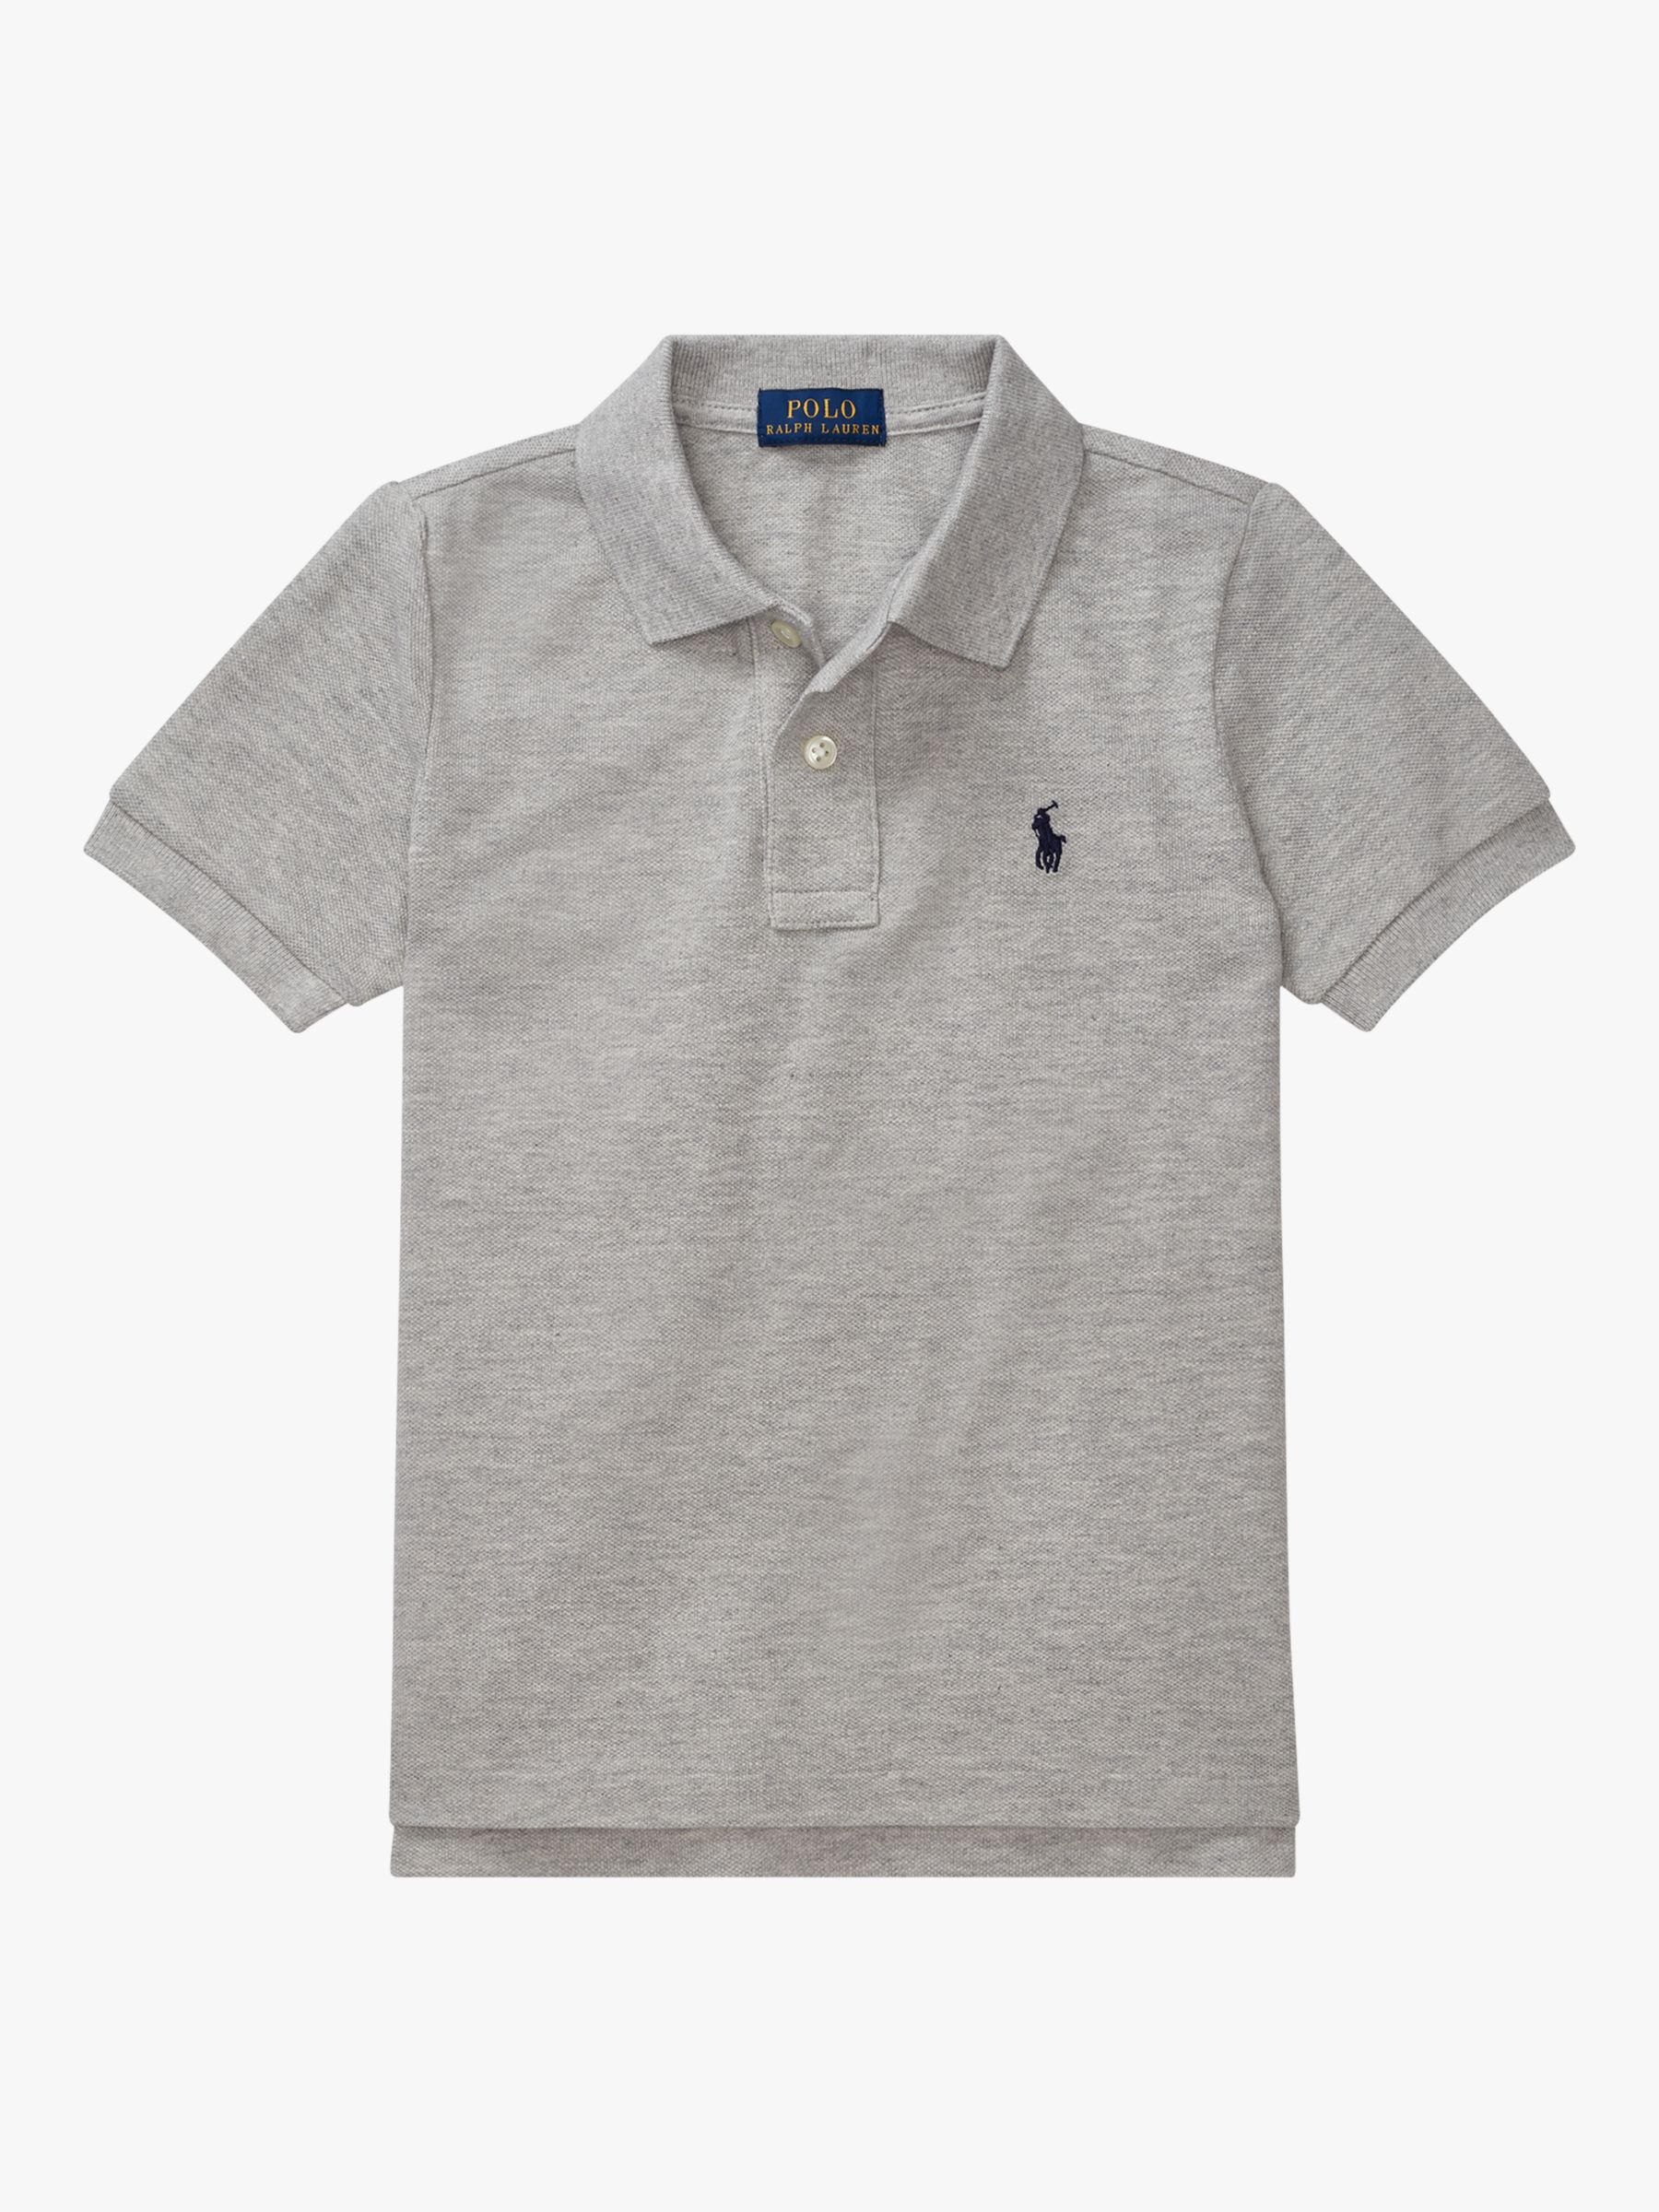 Polo Ralph Lauren Boys' Mesh Polo Shirt 